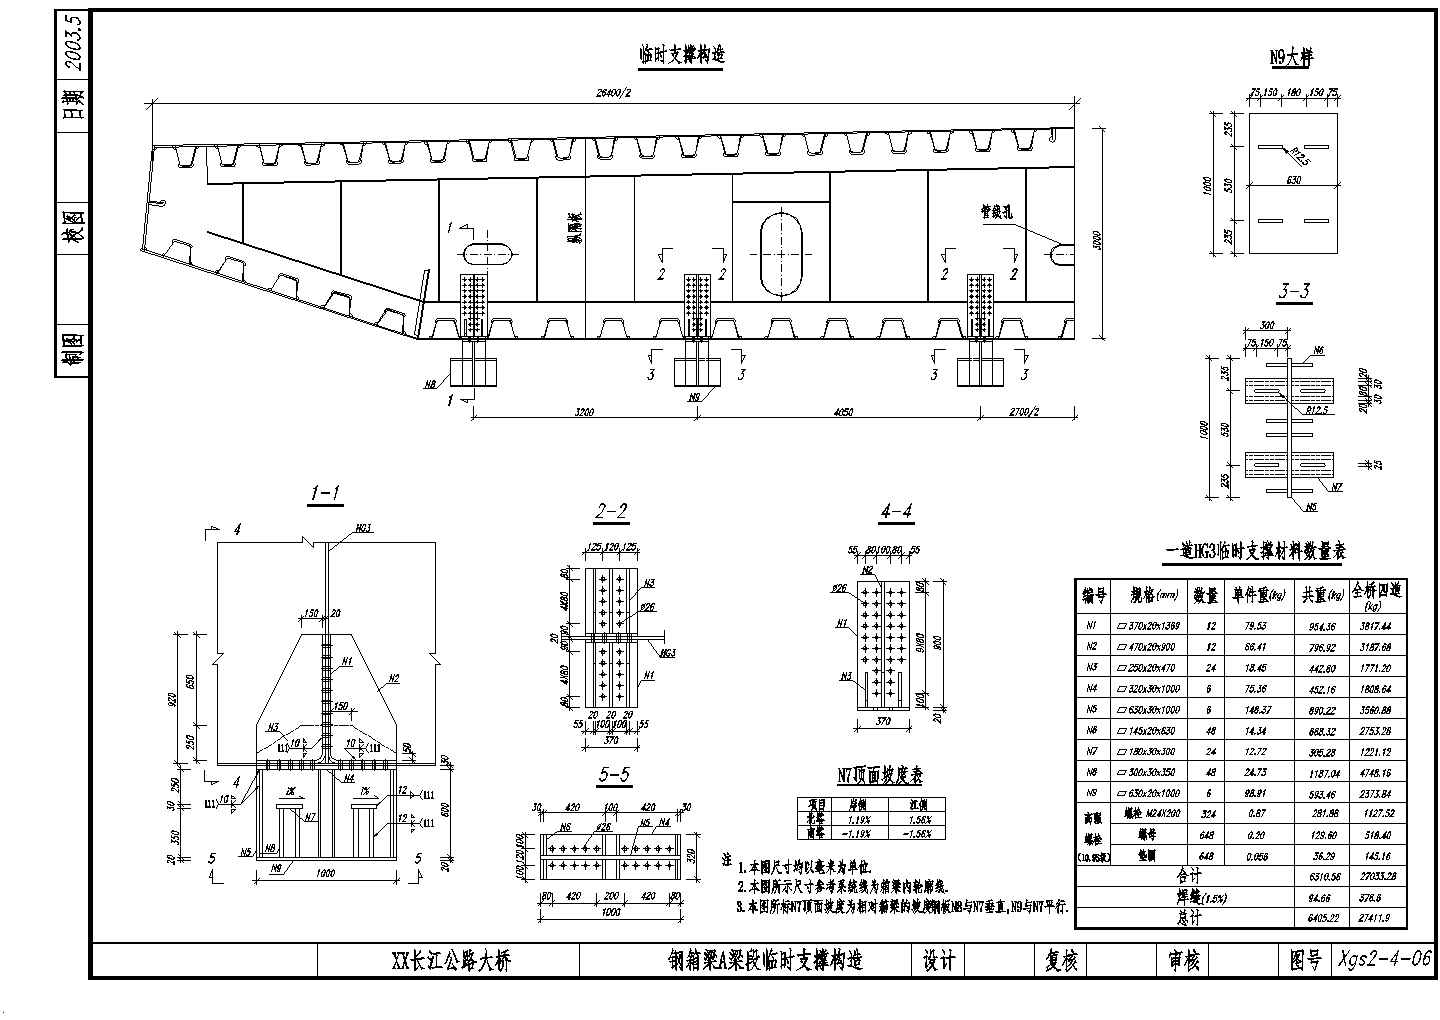 公路跨长江特大组合体系桥梁（变更）钢箱梁A梁段临时支撑构造节点详图设计